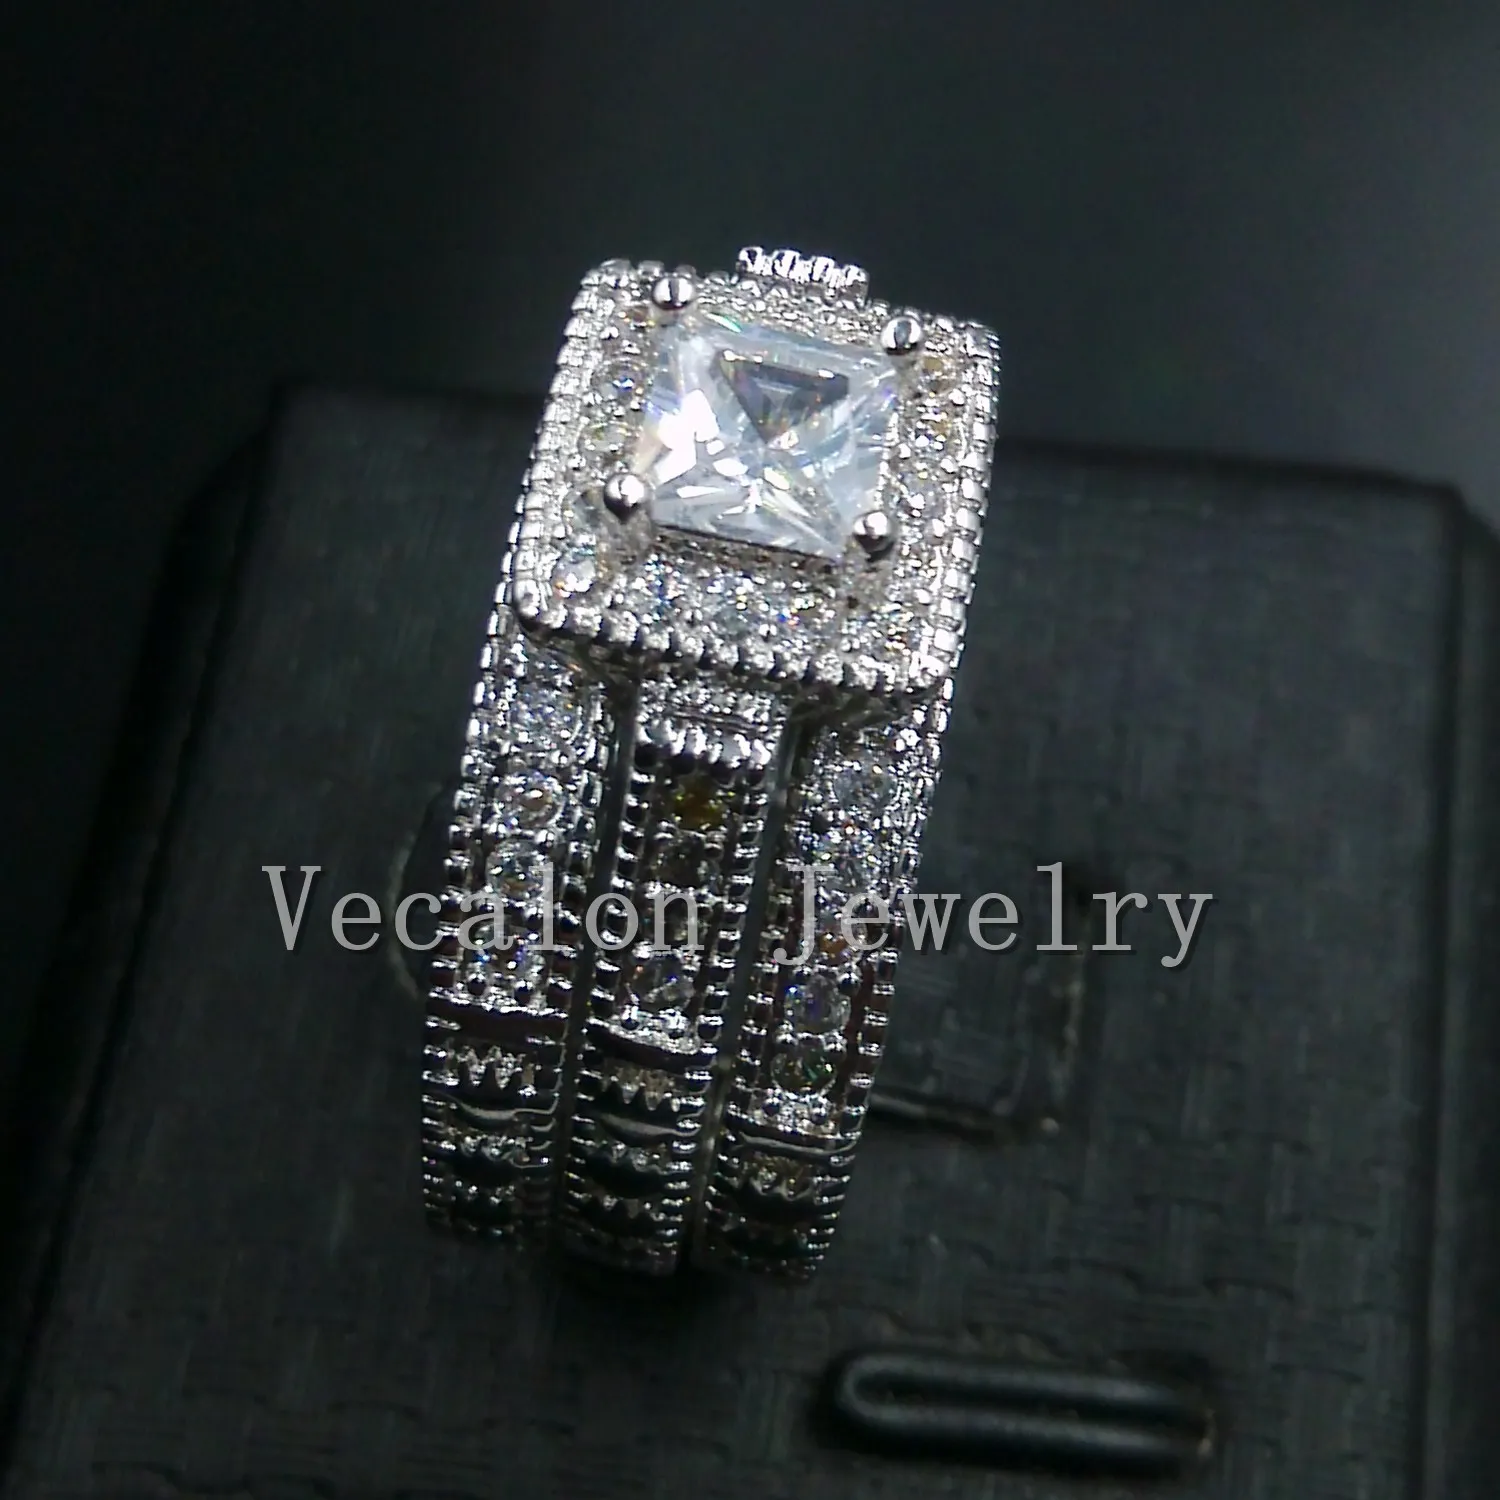 Vecalon Antique Ювелирные Изделия 3-в-1 Кольцо свадьбы 3-в-1 Набор для женщин 2CT Имитация Diamond CZ 10KT Белое золото заполненное кольцо